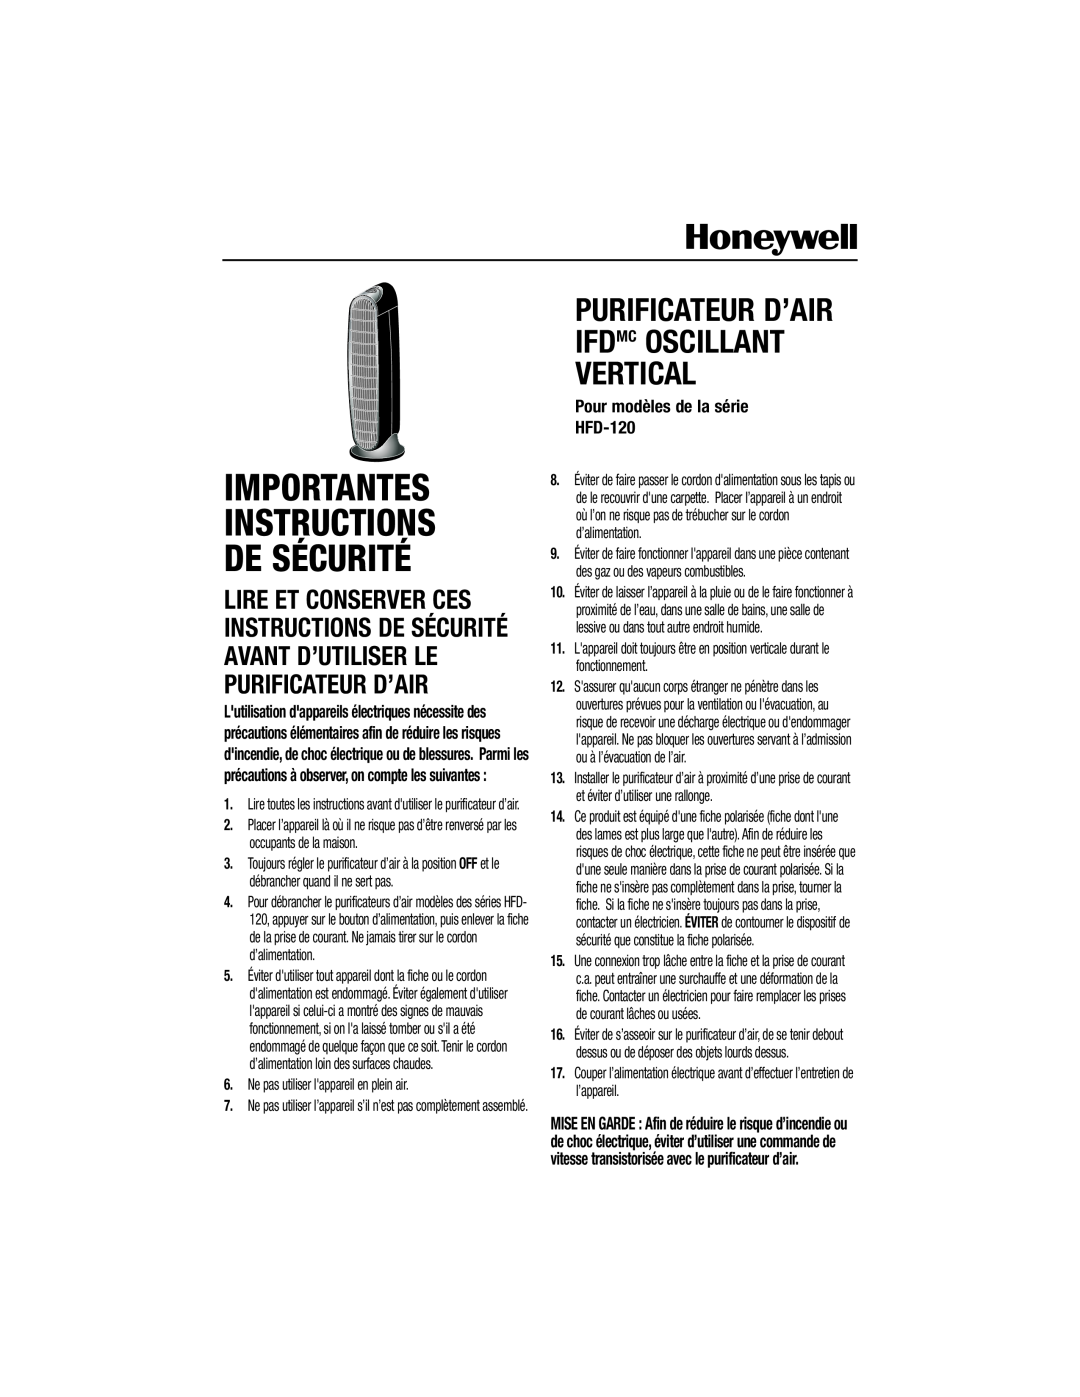 Honeywell HFD120Q important safety instructions Importantes Instructions De Sécurité, Pour modèles de la série HFD-120 